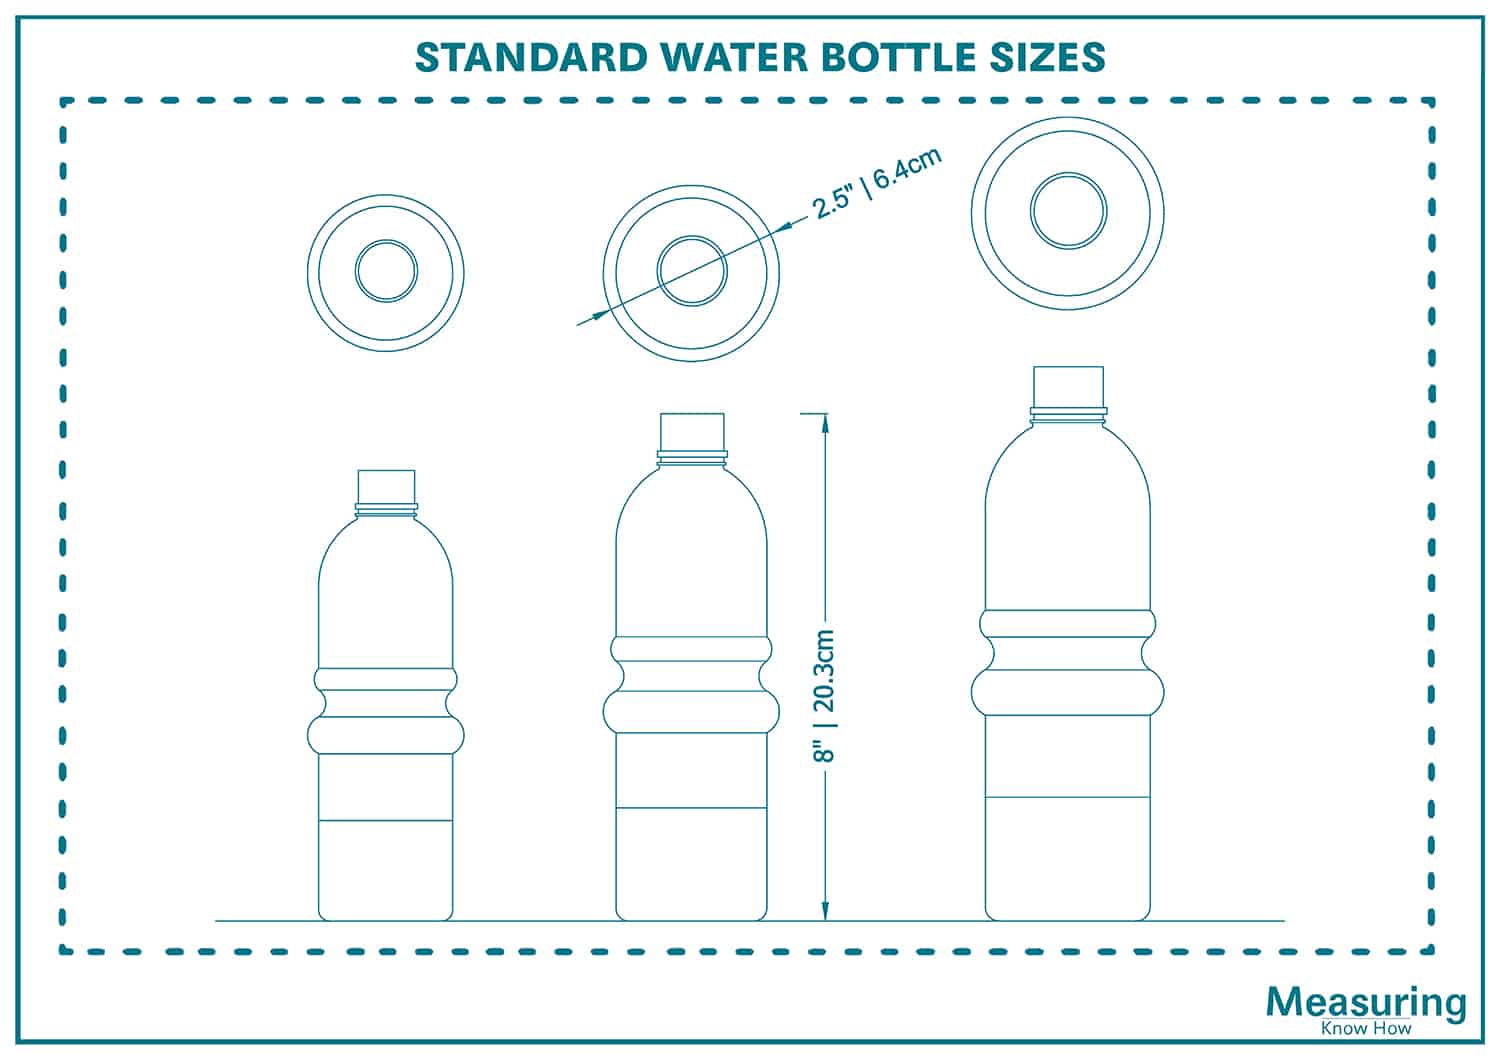 Standard Water Bottle Sizes